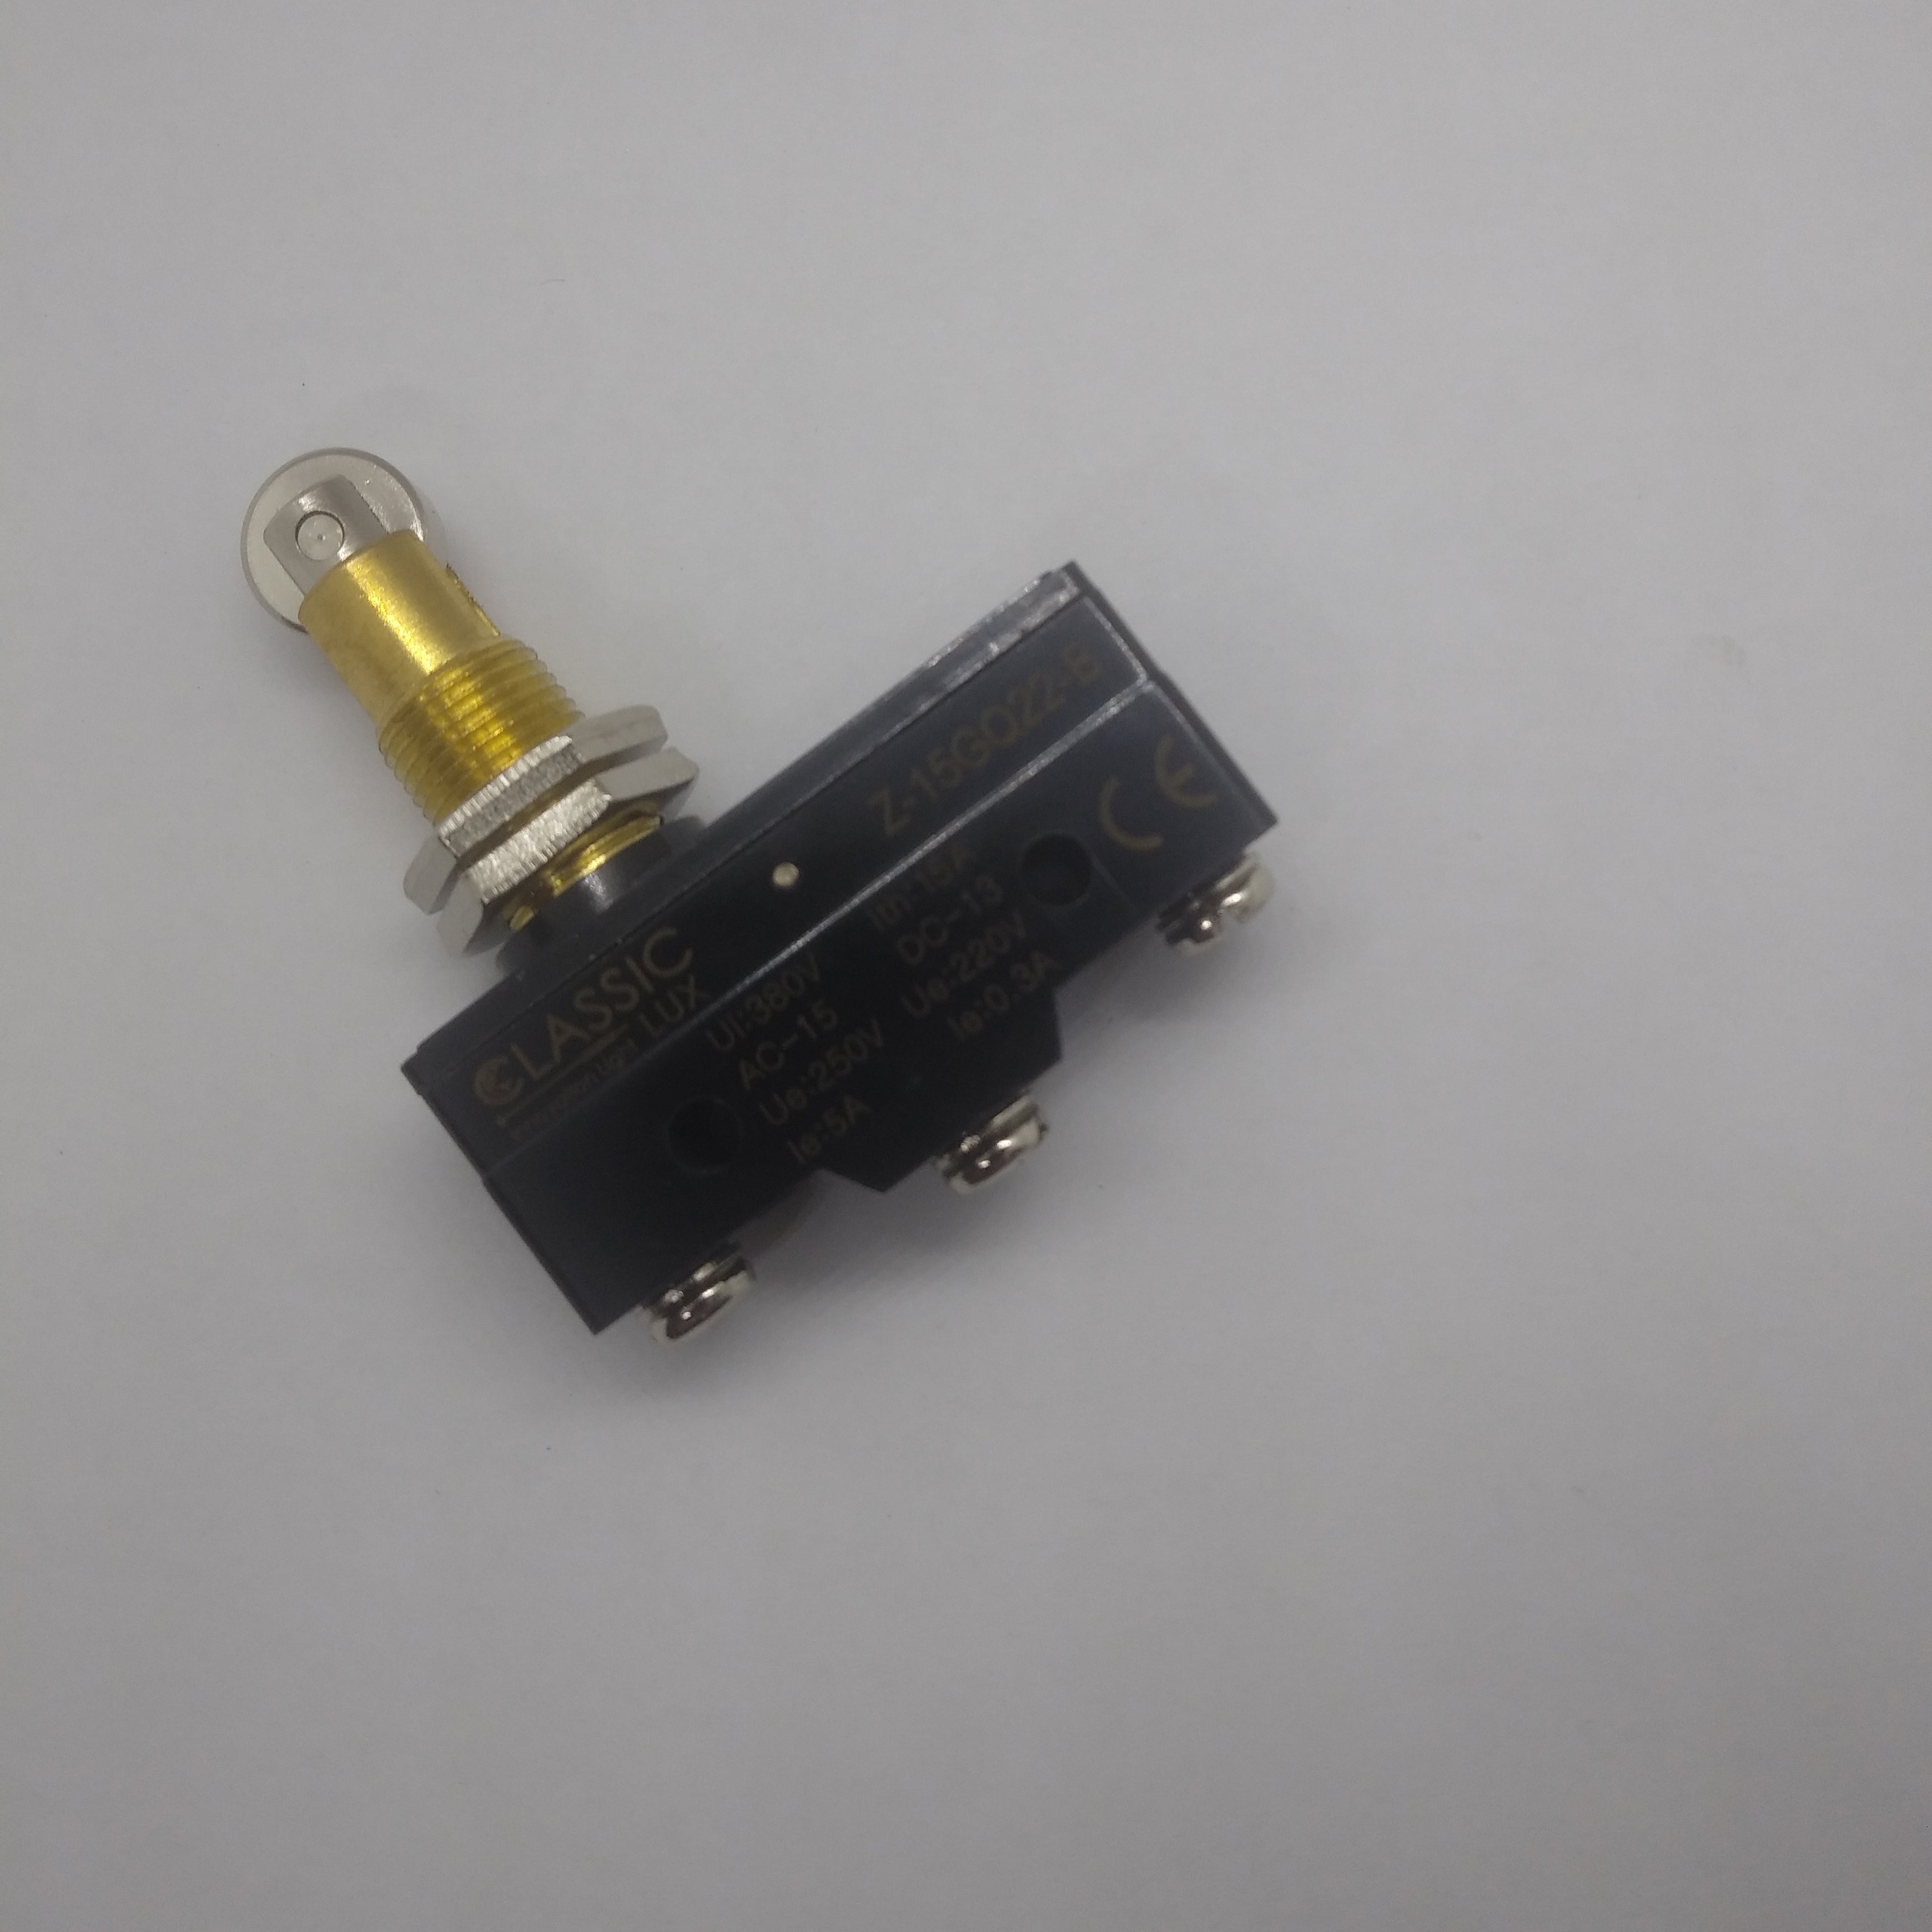 RBOI-022 Interruptor de puerta para sierra de cinta